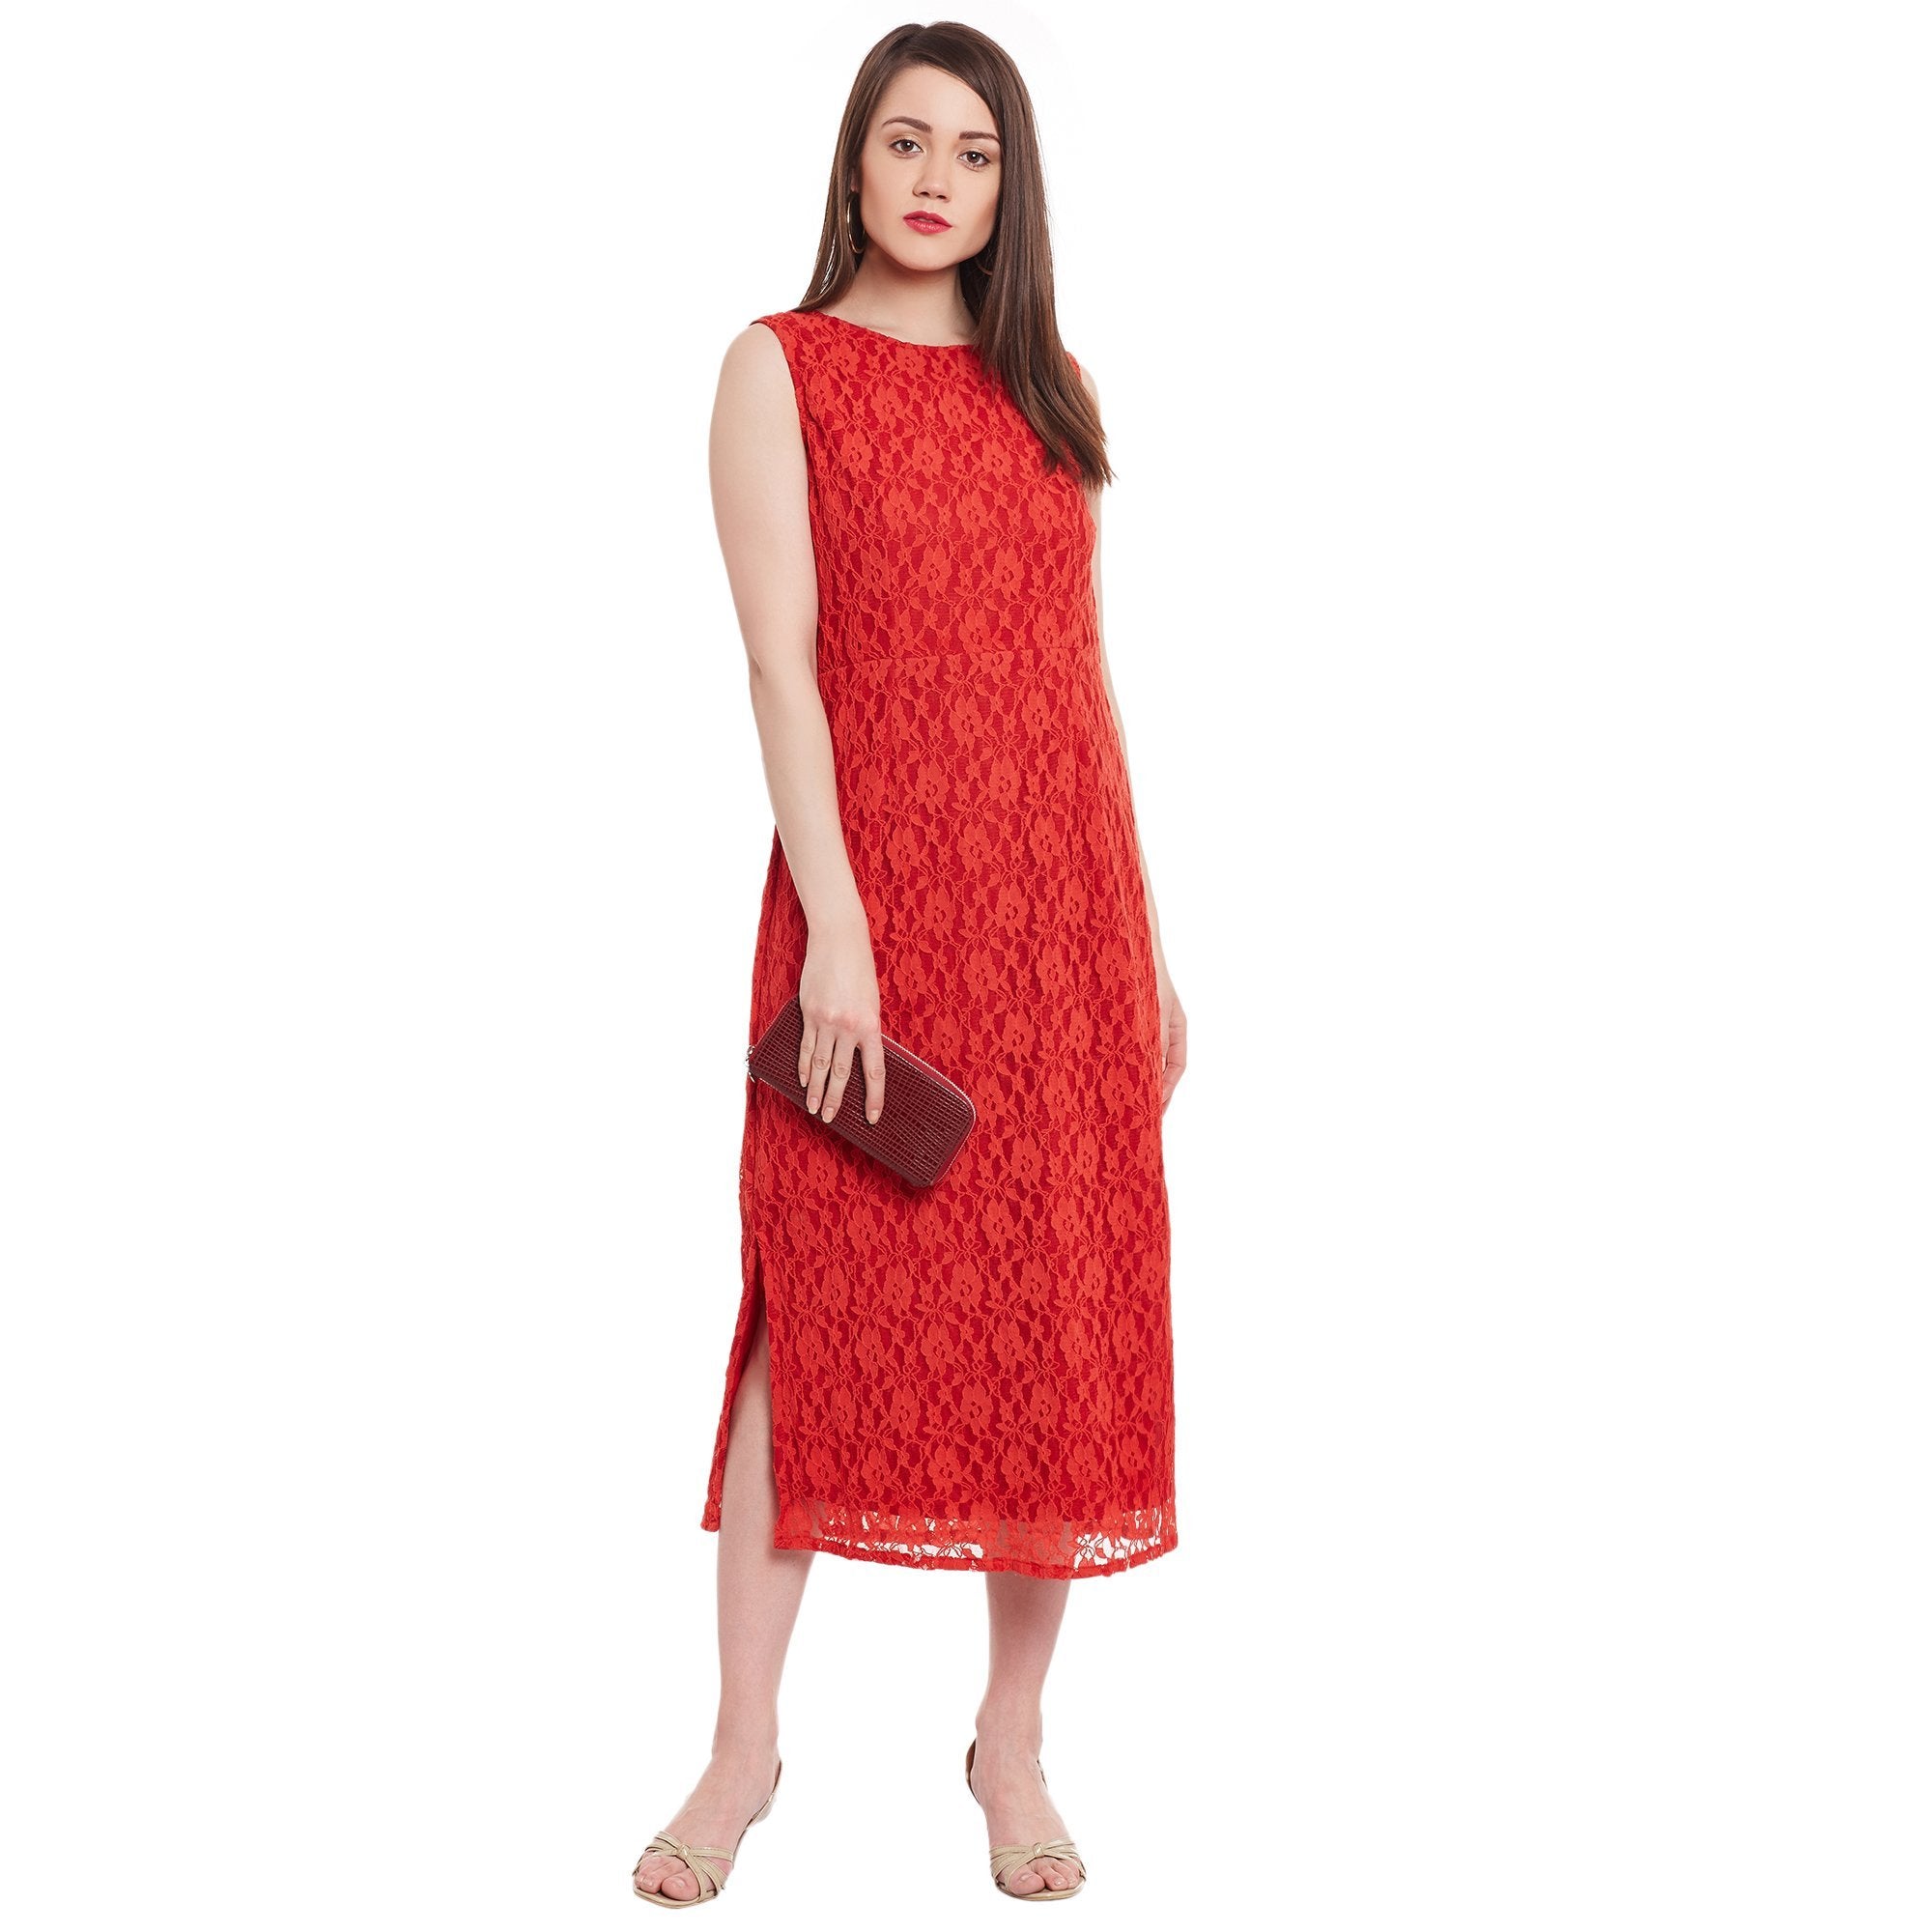 Women's Sleeveless Lace Dress - Pannkh